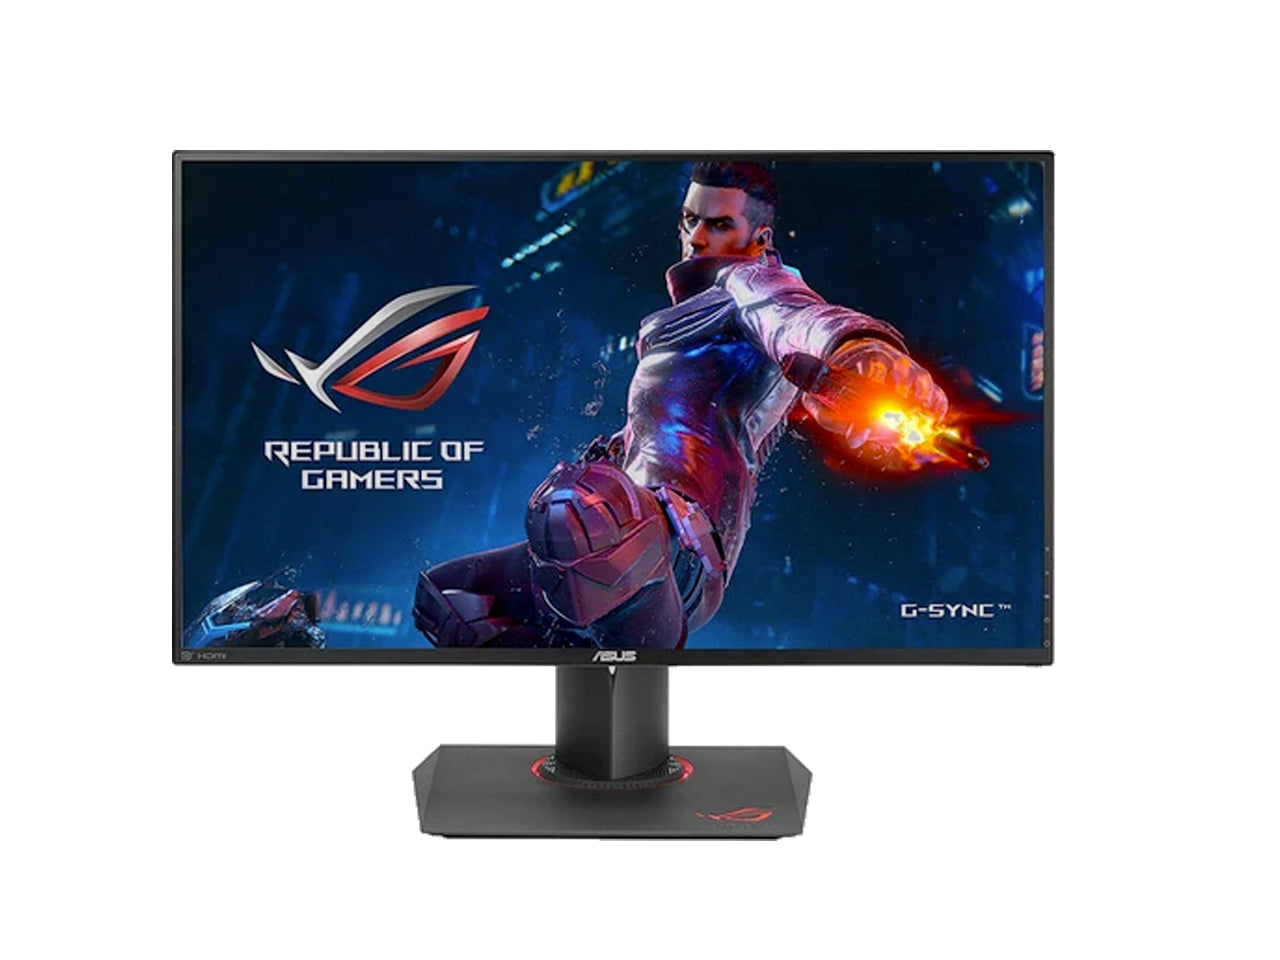 ASUS ROG Swift PG279Q 27-inch Resolution 2560x1440 G-sync WQHD Gaming LED Monitor